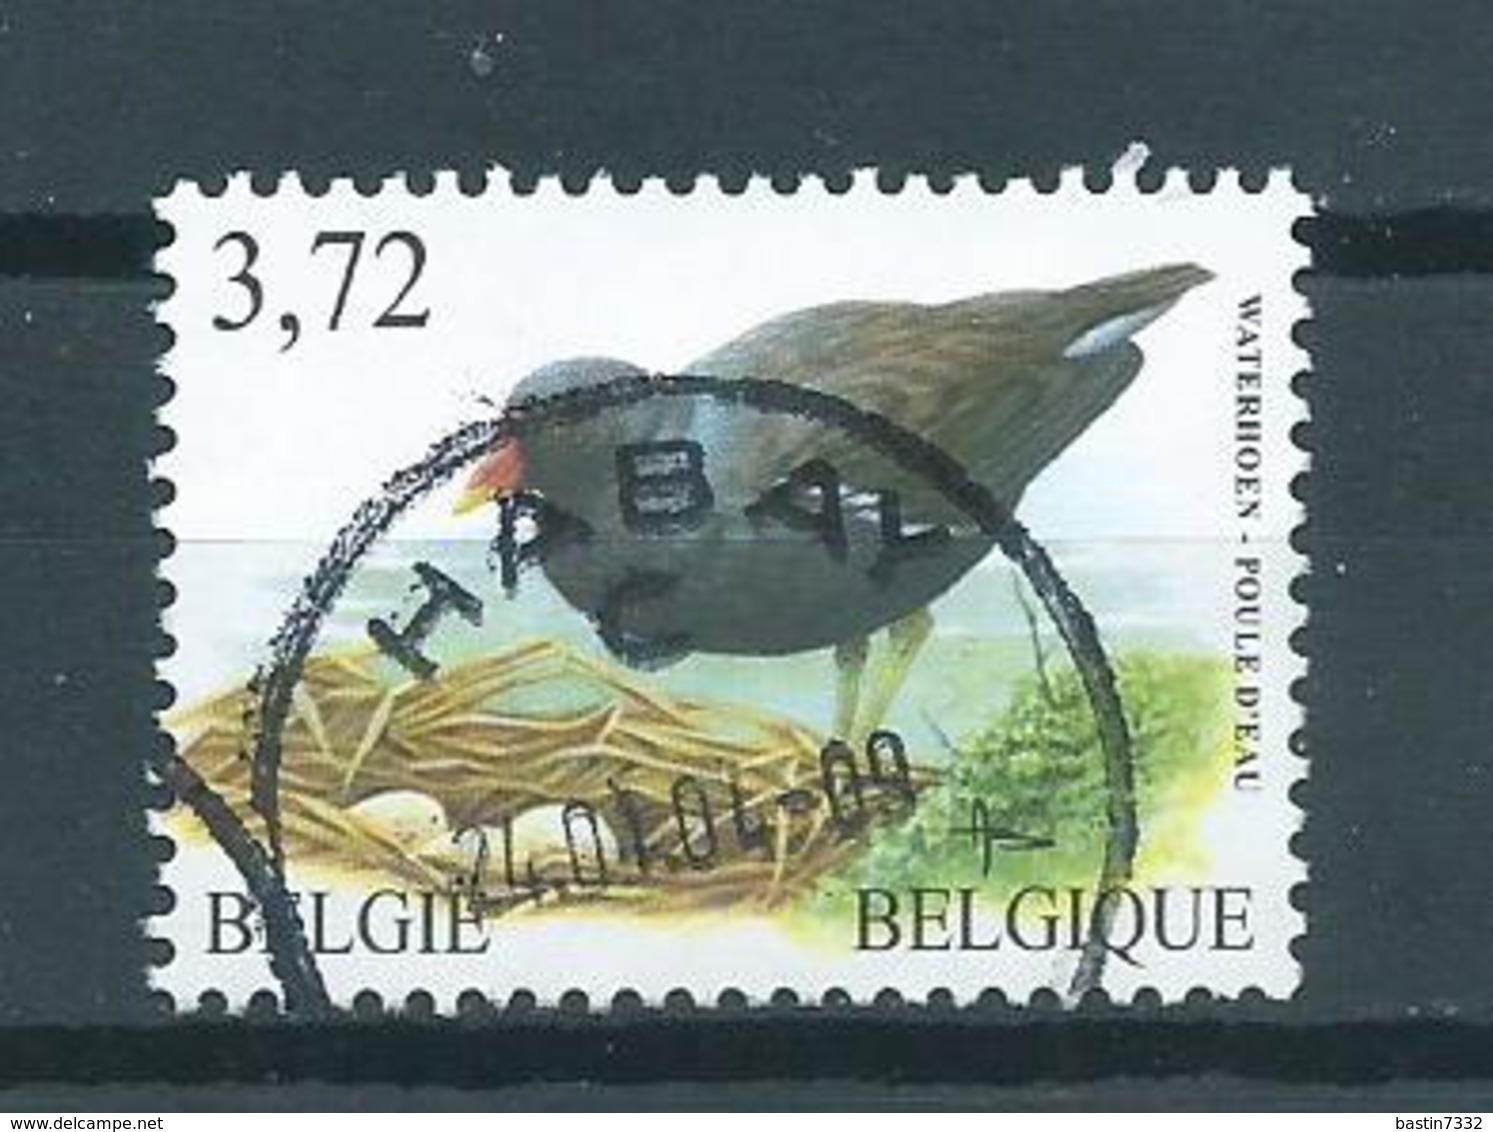 2003 Belgium 3,72 EURO Buzin Birds,oiseaux,vögel,waterhoen Used/gebruikt/oblitere - Oblitérés